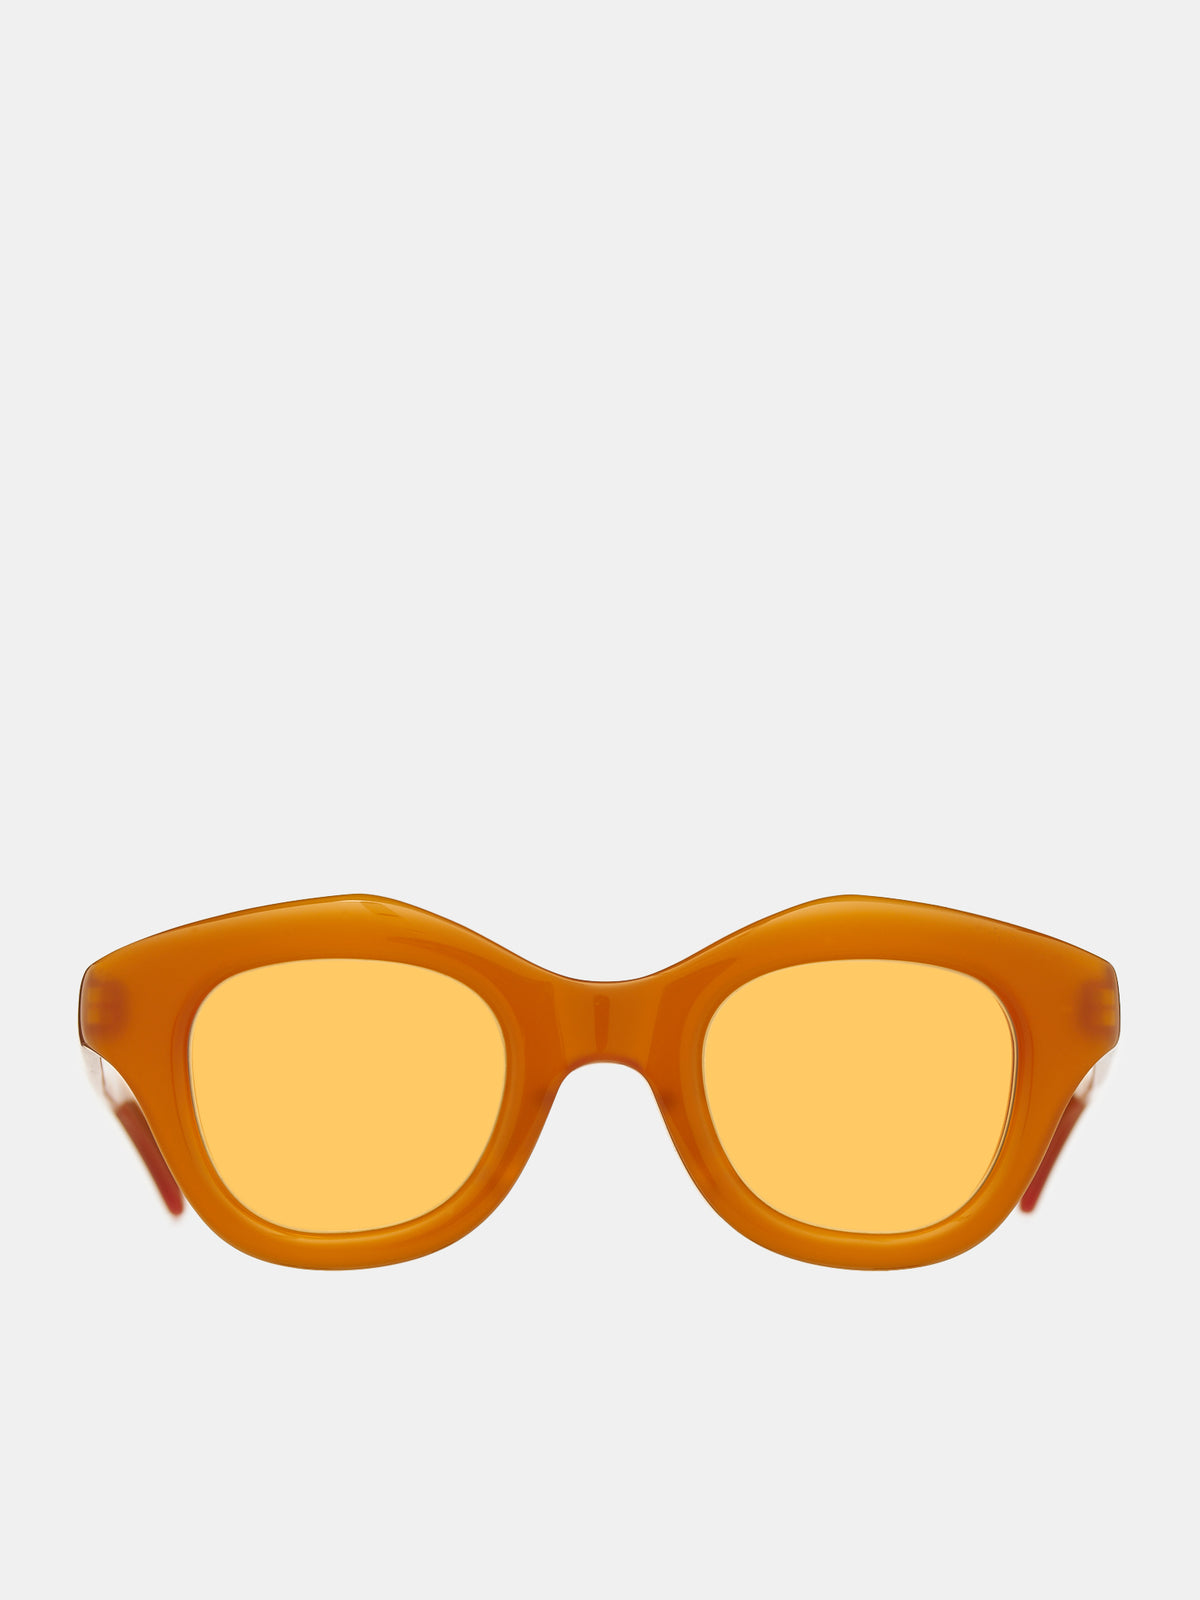 Hook Sunglasses (HOOK-ORANGE-YAMABUKI)